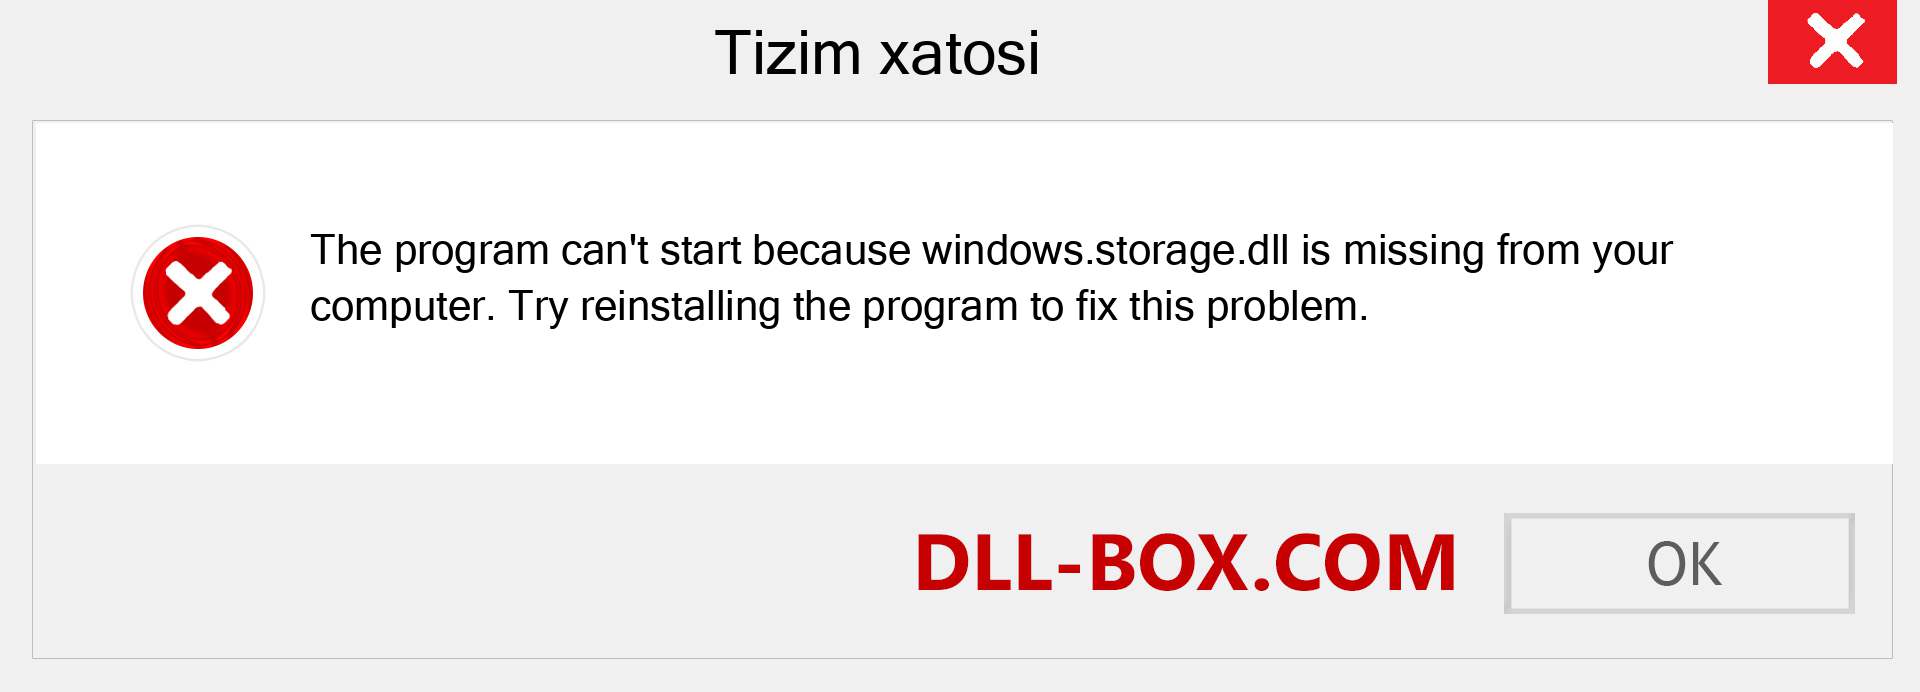 windows.storage.dll fayli yo'qolganmi?. Windows 7, 8, 10 uchun yuklab olish - Windowsda windows.storage dll etishmayotgan xatoni tuzating, rasmlar, rasmlar